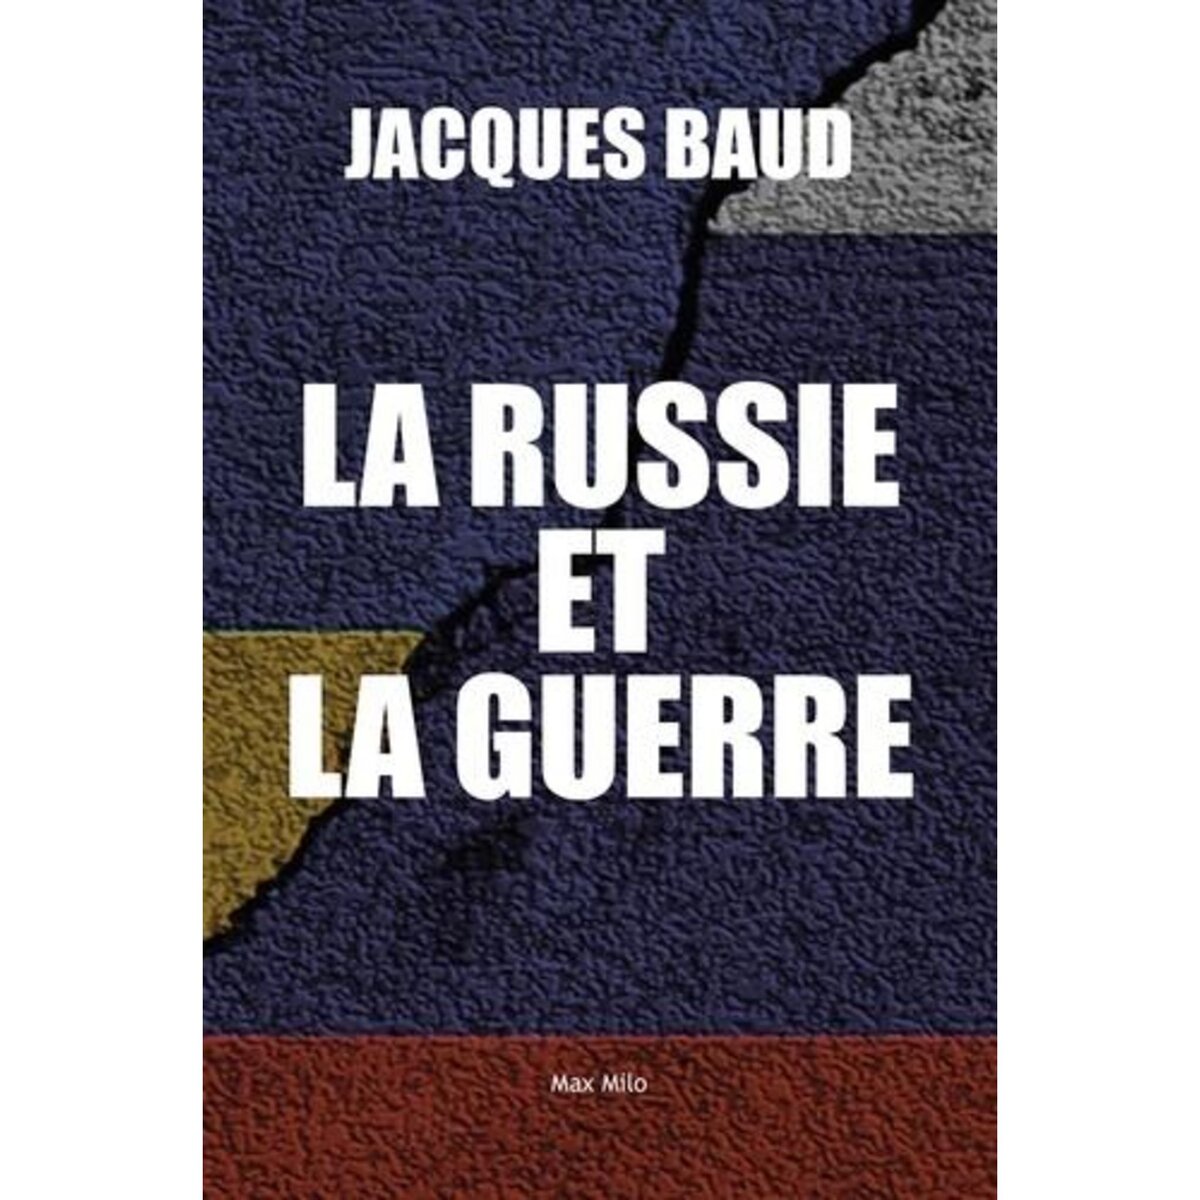  L'ART DE LA GUERRE RUSSE. COMMENT L'OCCIDENT A CONDUIT L'UKRAINE A L'ECHEC, Baud Jacques